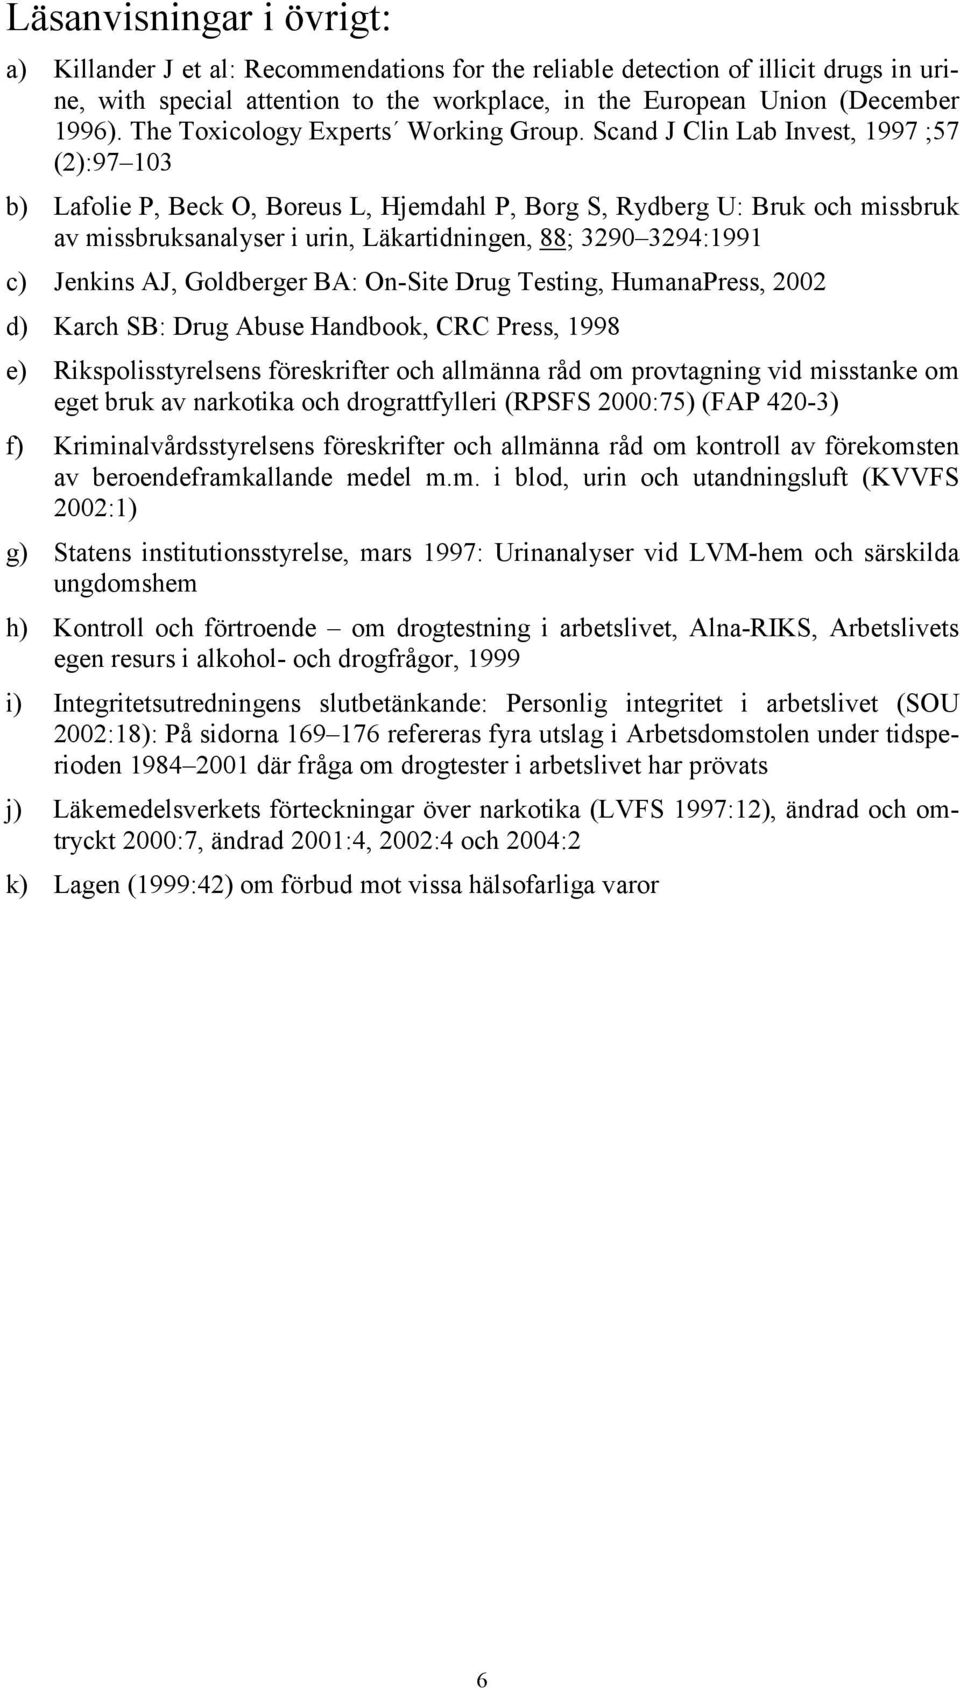 Scand J Clin Lab Invest, 1997 ;57 (2):97 103 b) Lafolie P, Beck O, Boreus L, Hjemdahl P, Borg S, Rydberg U: Bruk och missbruk av missbruksanalyser i urin, Läkartidningen, 88; 3290 3294:1991 c)